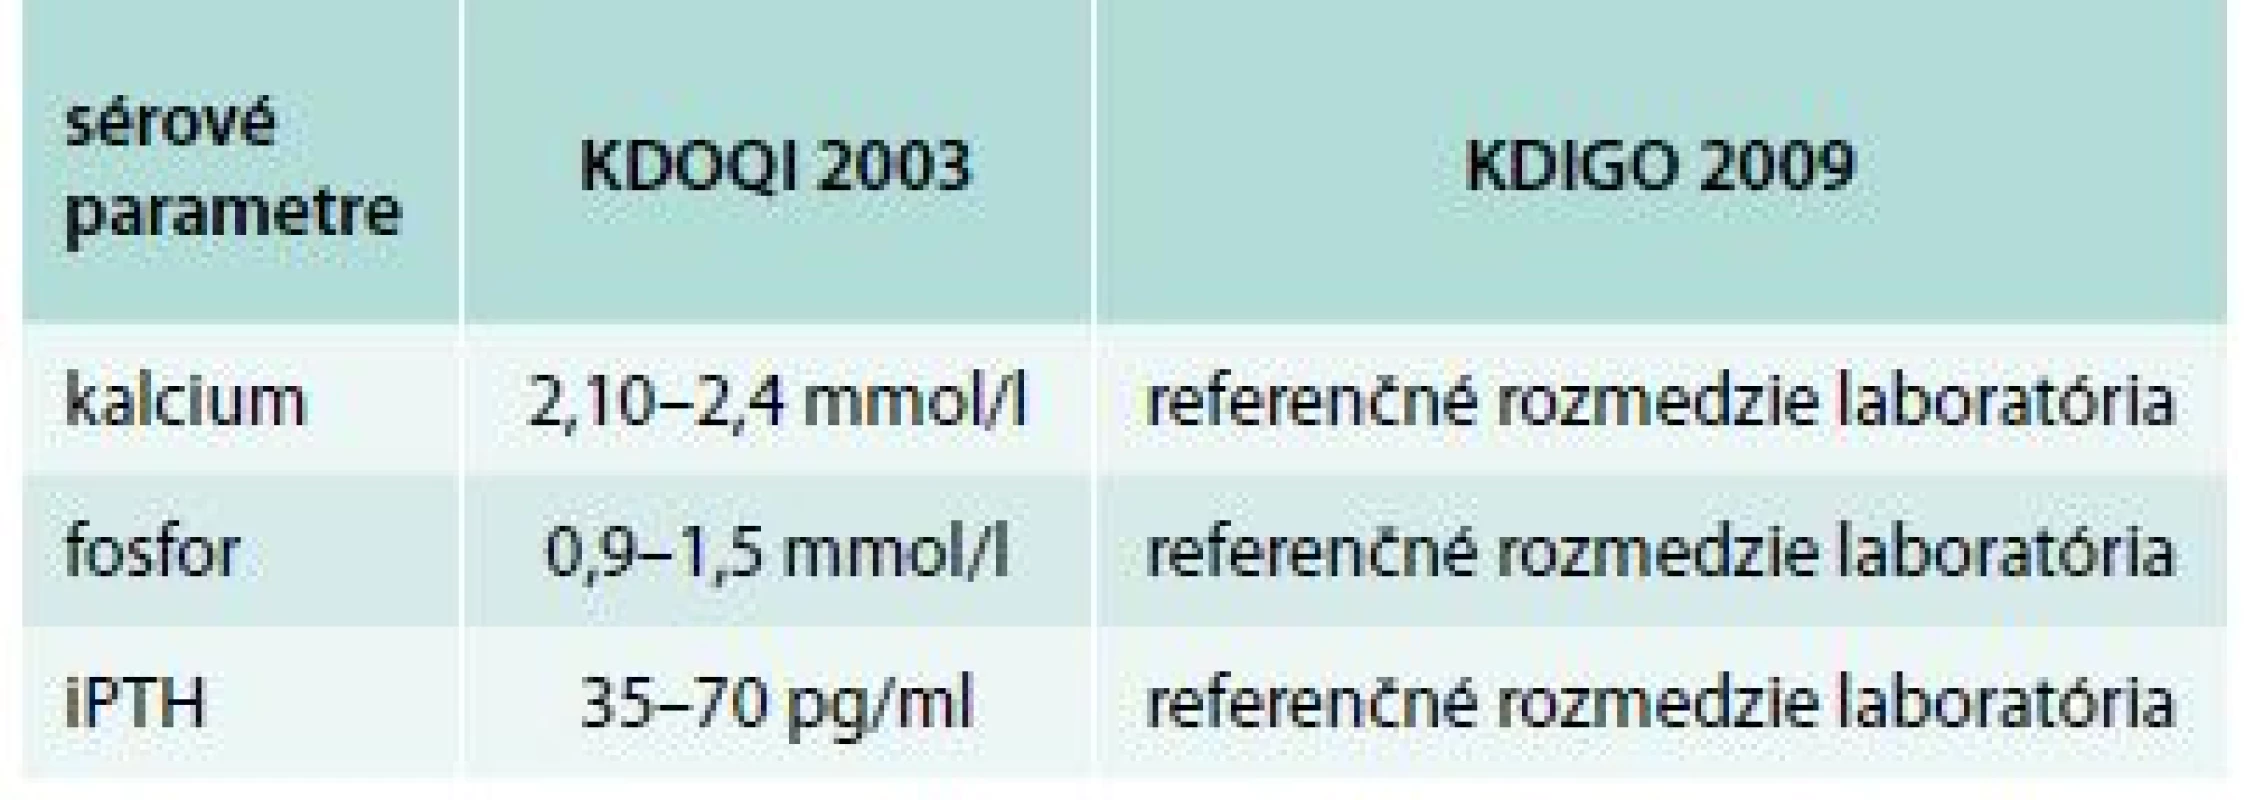 Rozdiely medzi odporúčaniami KDOQI a KDIGO pre CKD 3. štádia